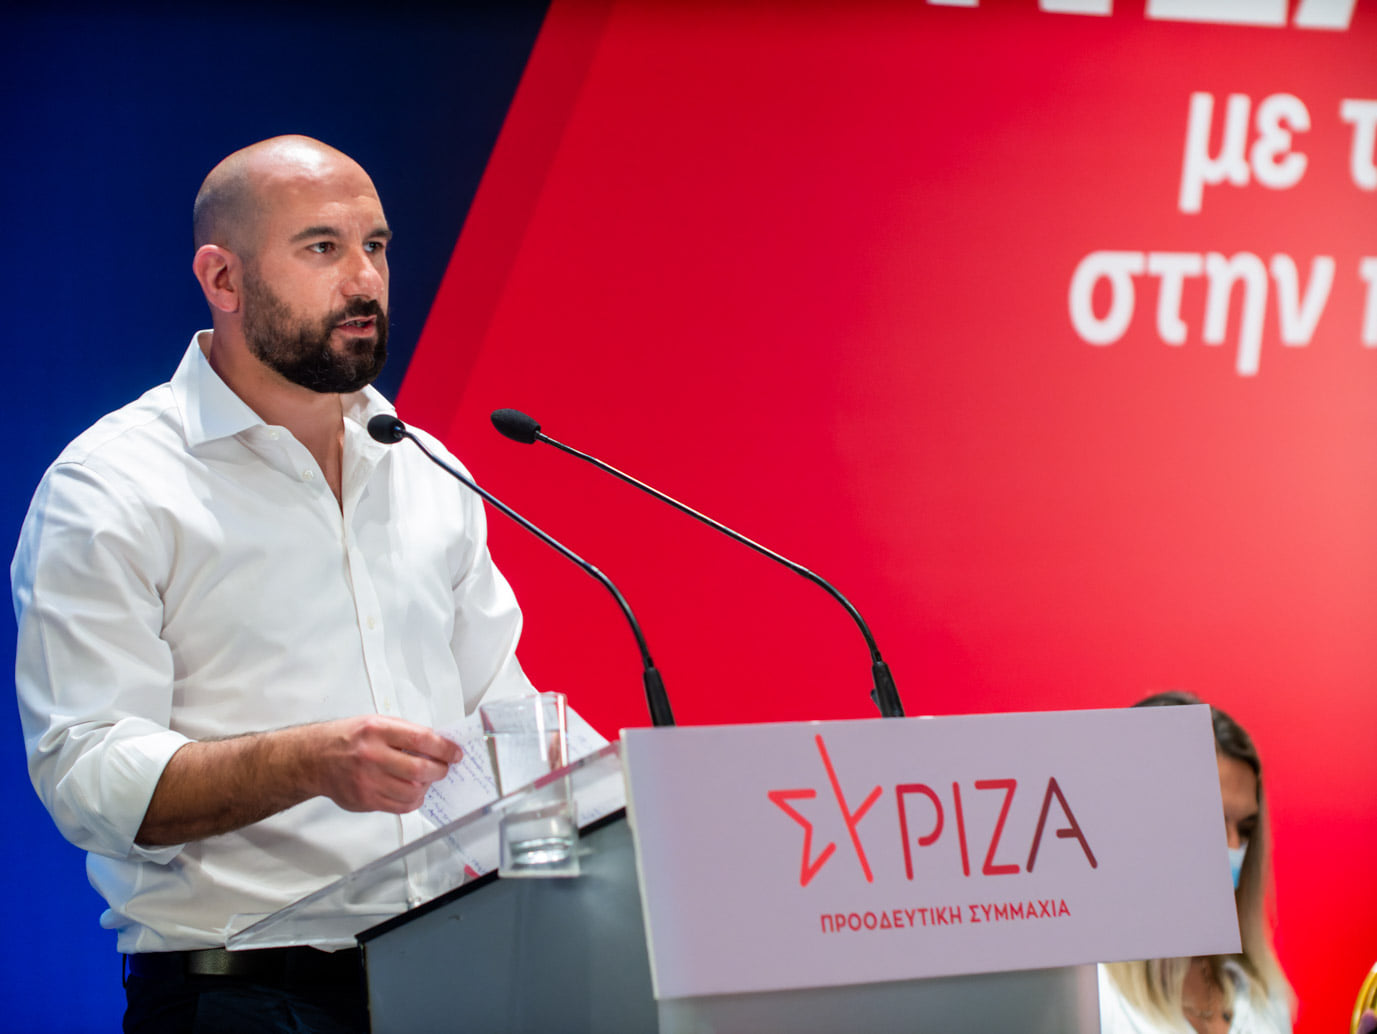 Δ. Τζανακόπουλος: Συγγνώμη και παραίτηση, η μόνη εξιλέωση απέναντι στην ελληνική κοινωνία για τις πολιτικές αθλιότητες που διέσπειραν όλα αυτά τα χρόνια ο κ. Μητσοτάκης και η κυβέρνησή του